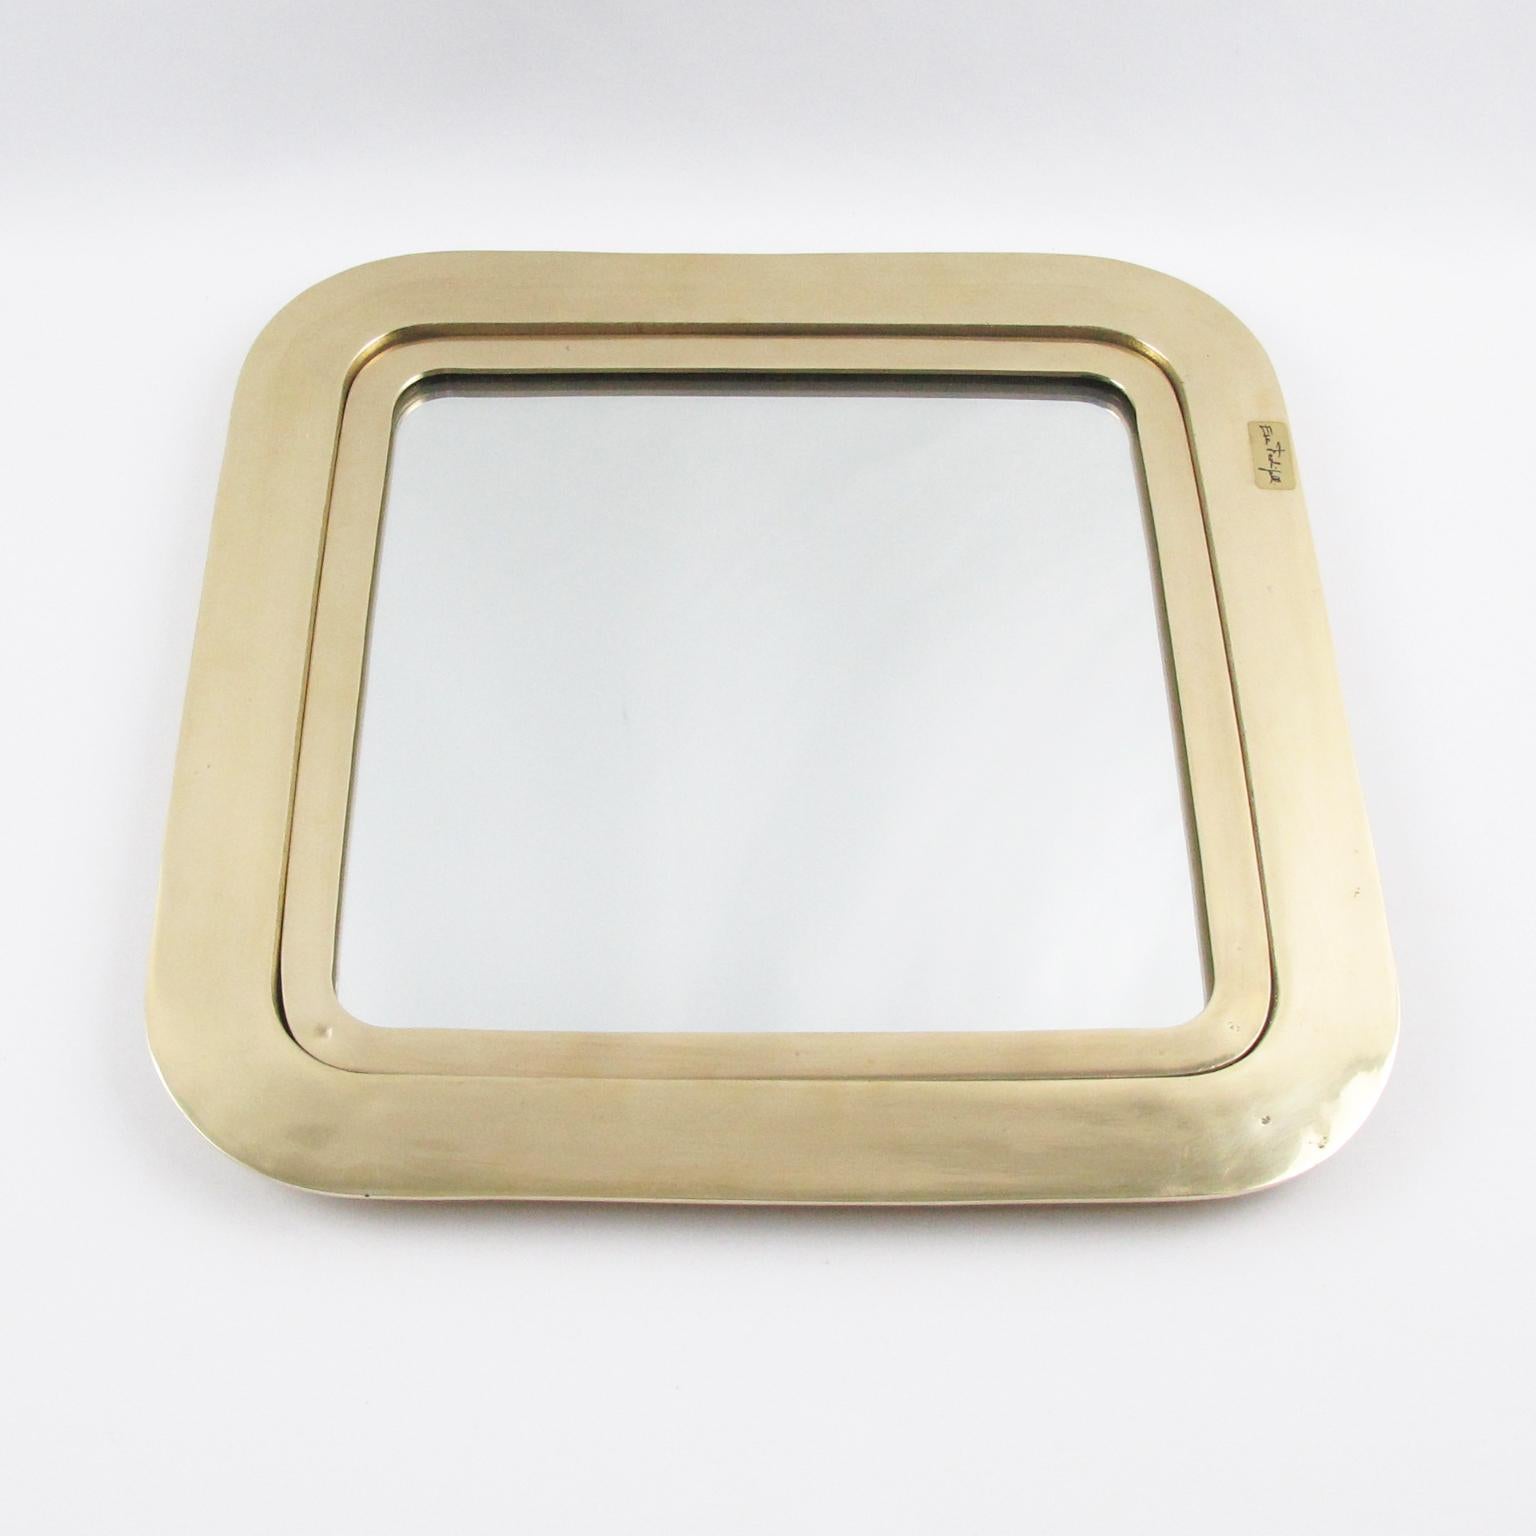 Die italienische Künstlerin Esa Fedrigolli hat dieses beeindruckende Tablett aus polierter, vergoldeter Bronze als Mittelstück, Servierplatte oder Videopoche geschaffen. Das Stück hat eine schwere quadratische Form mit abgerundeten Ecken und einen